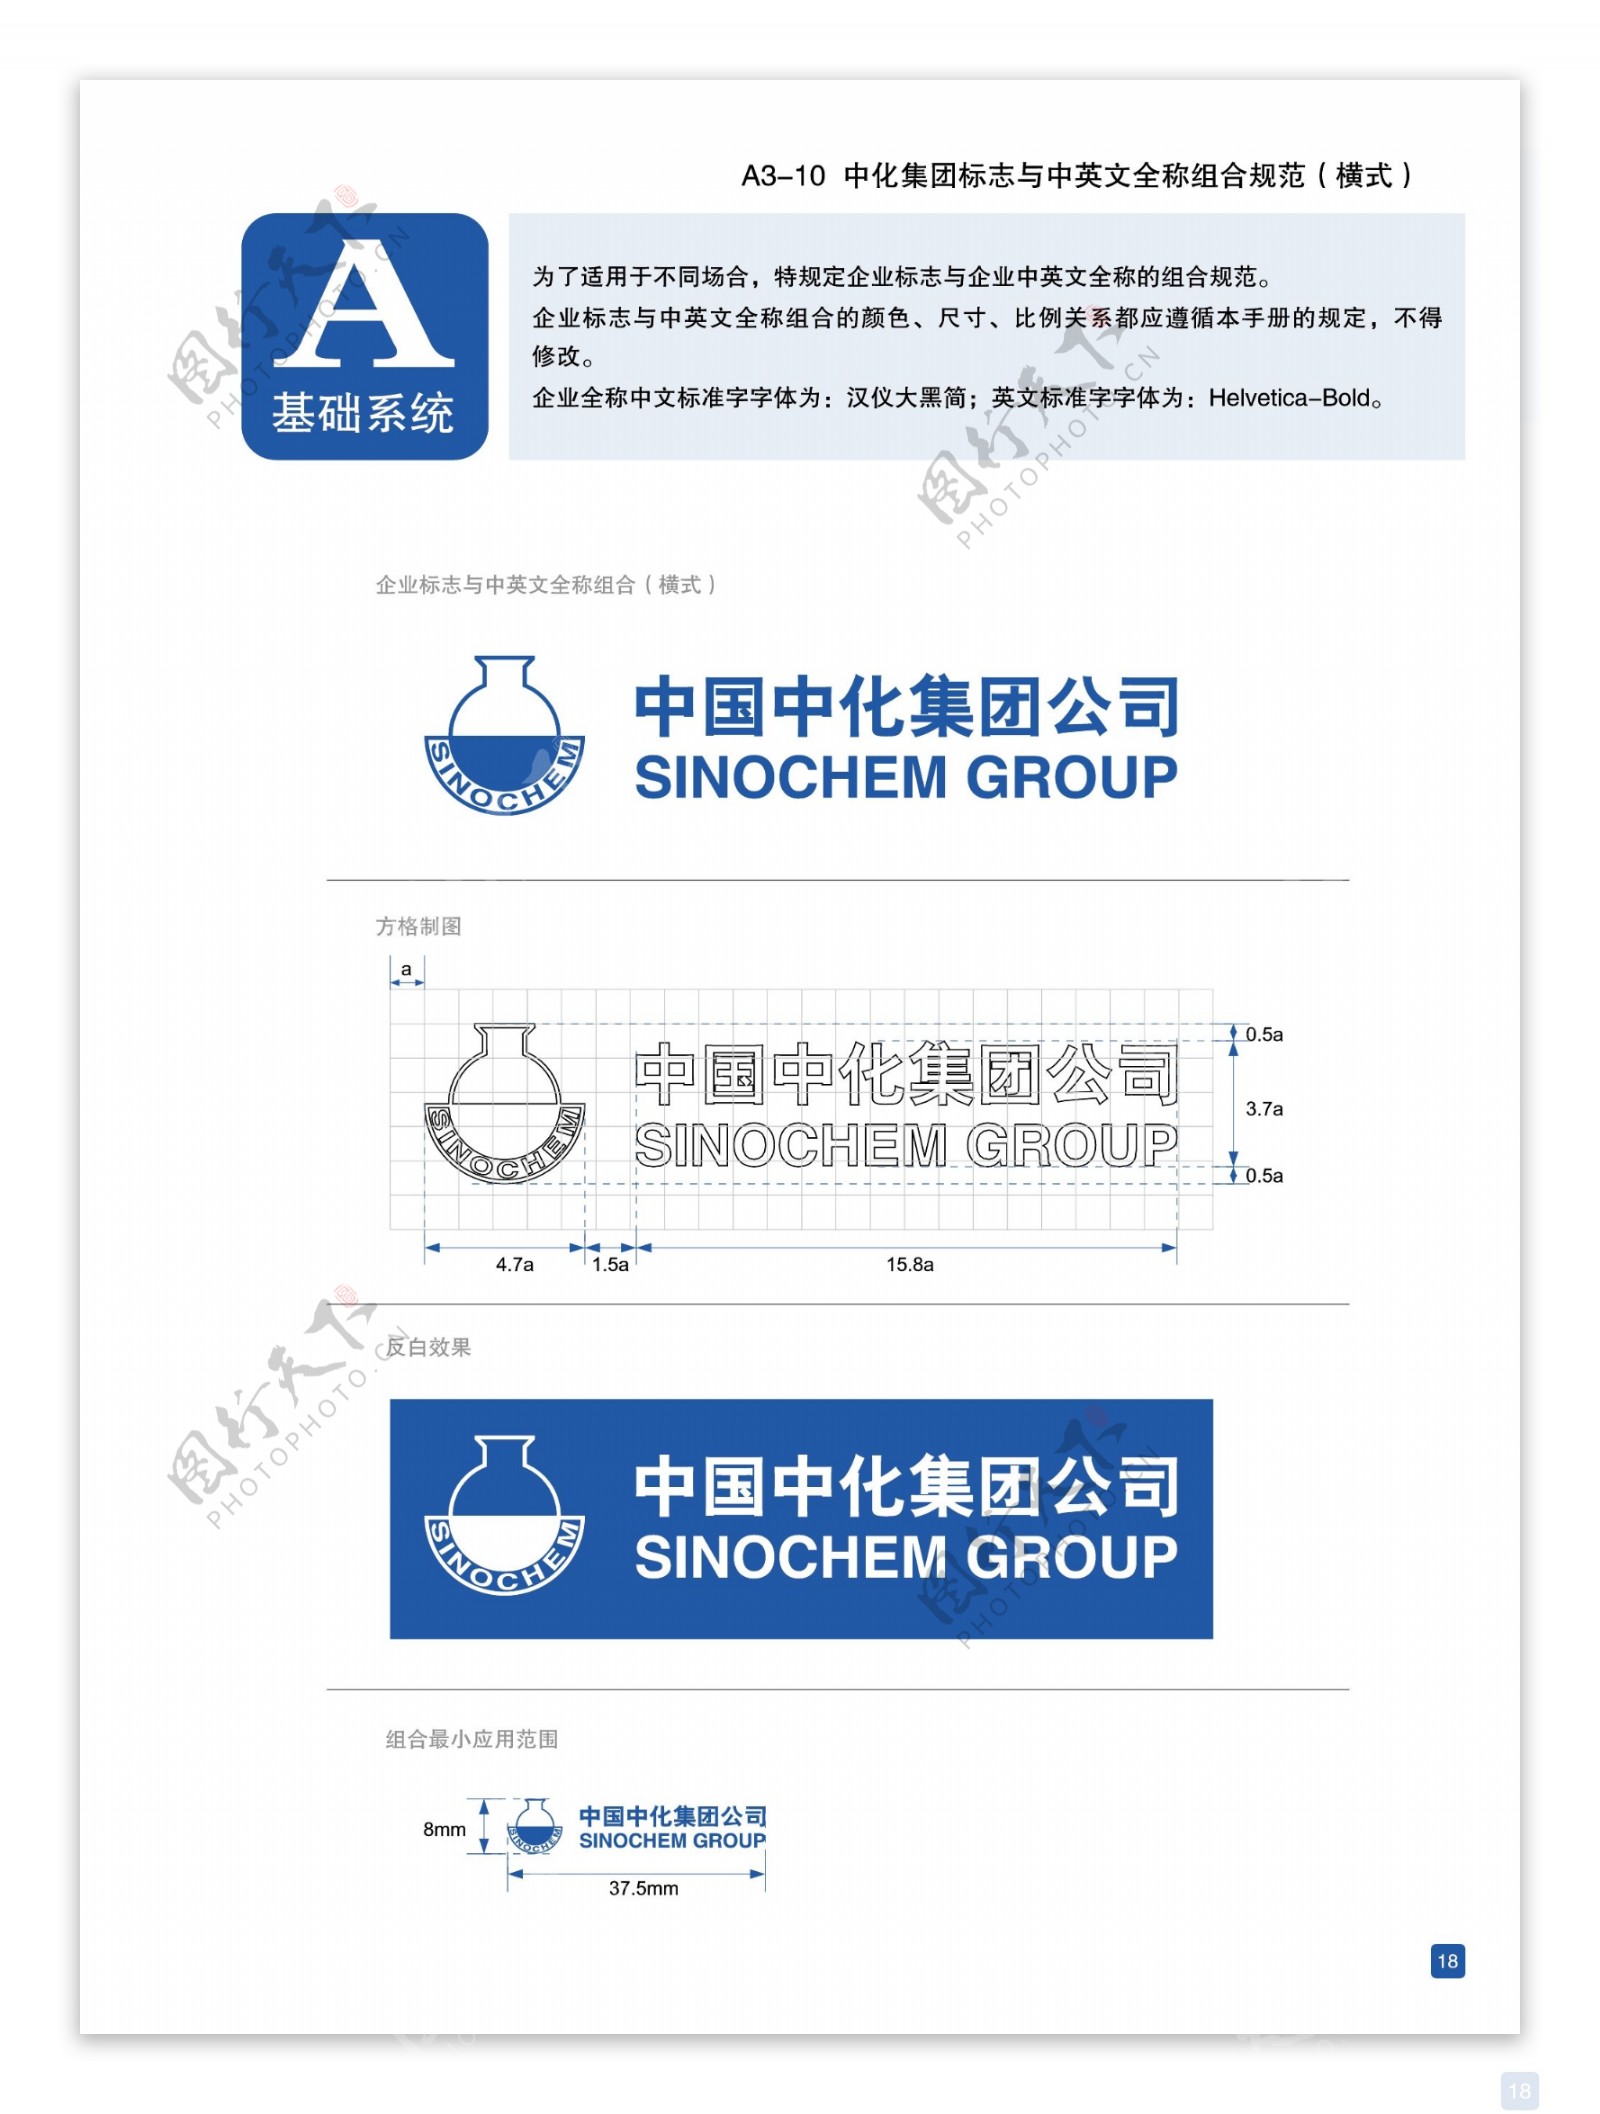 中国中化集团公司标识图片